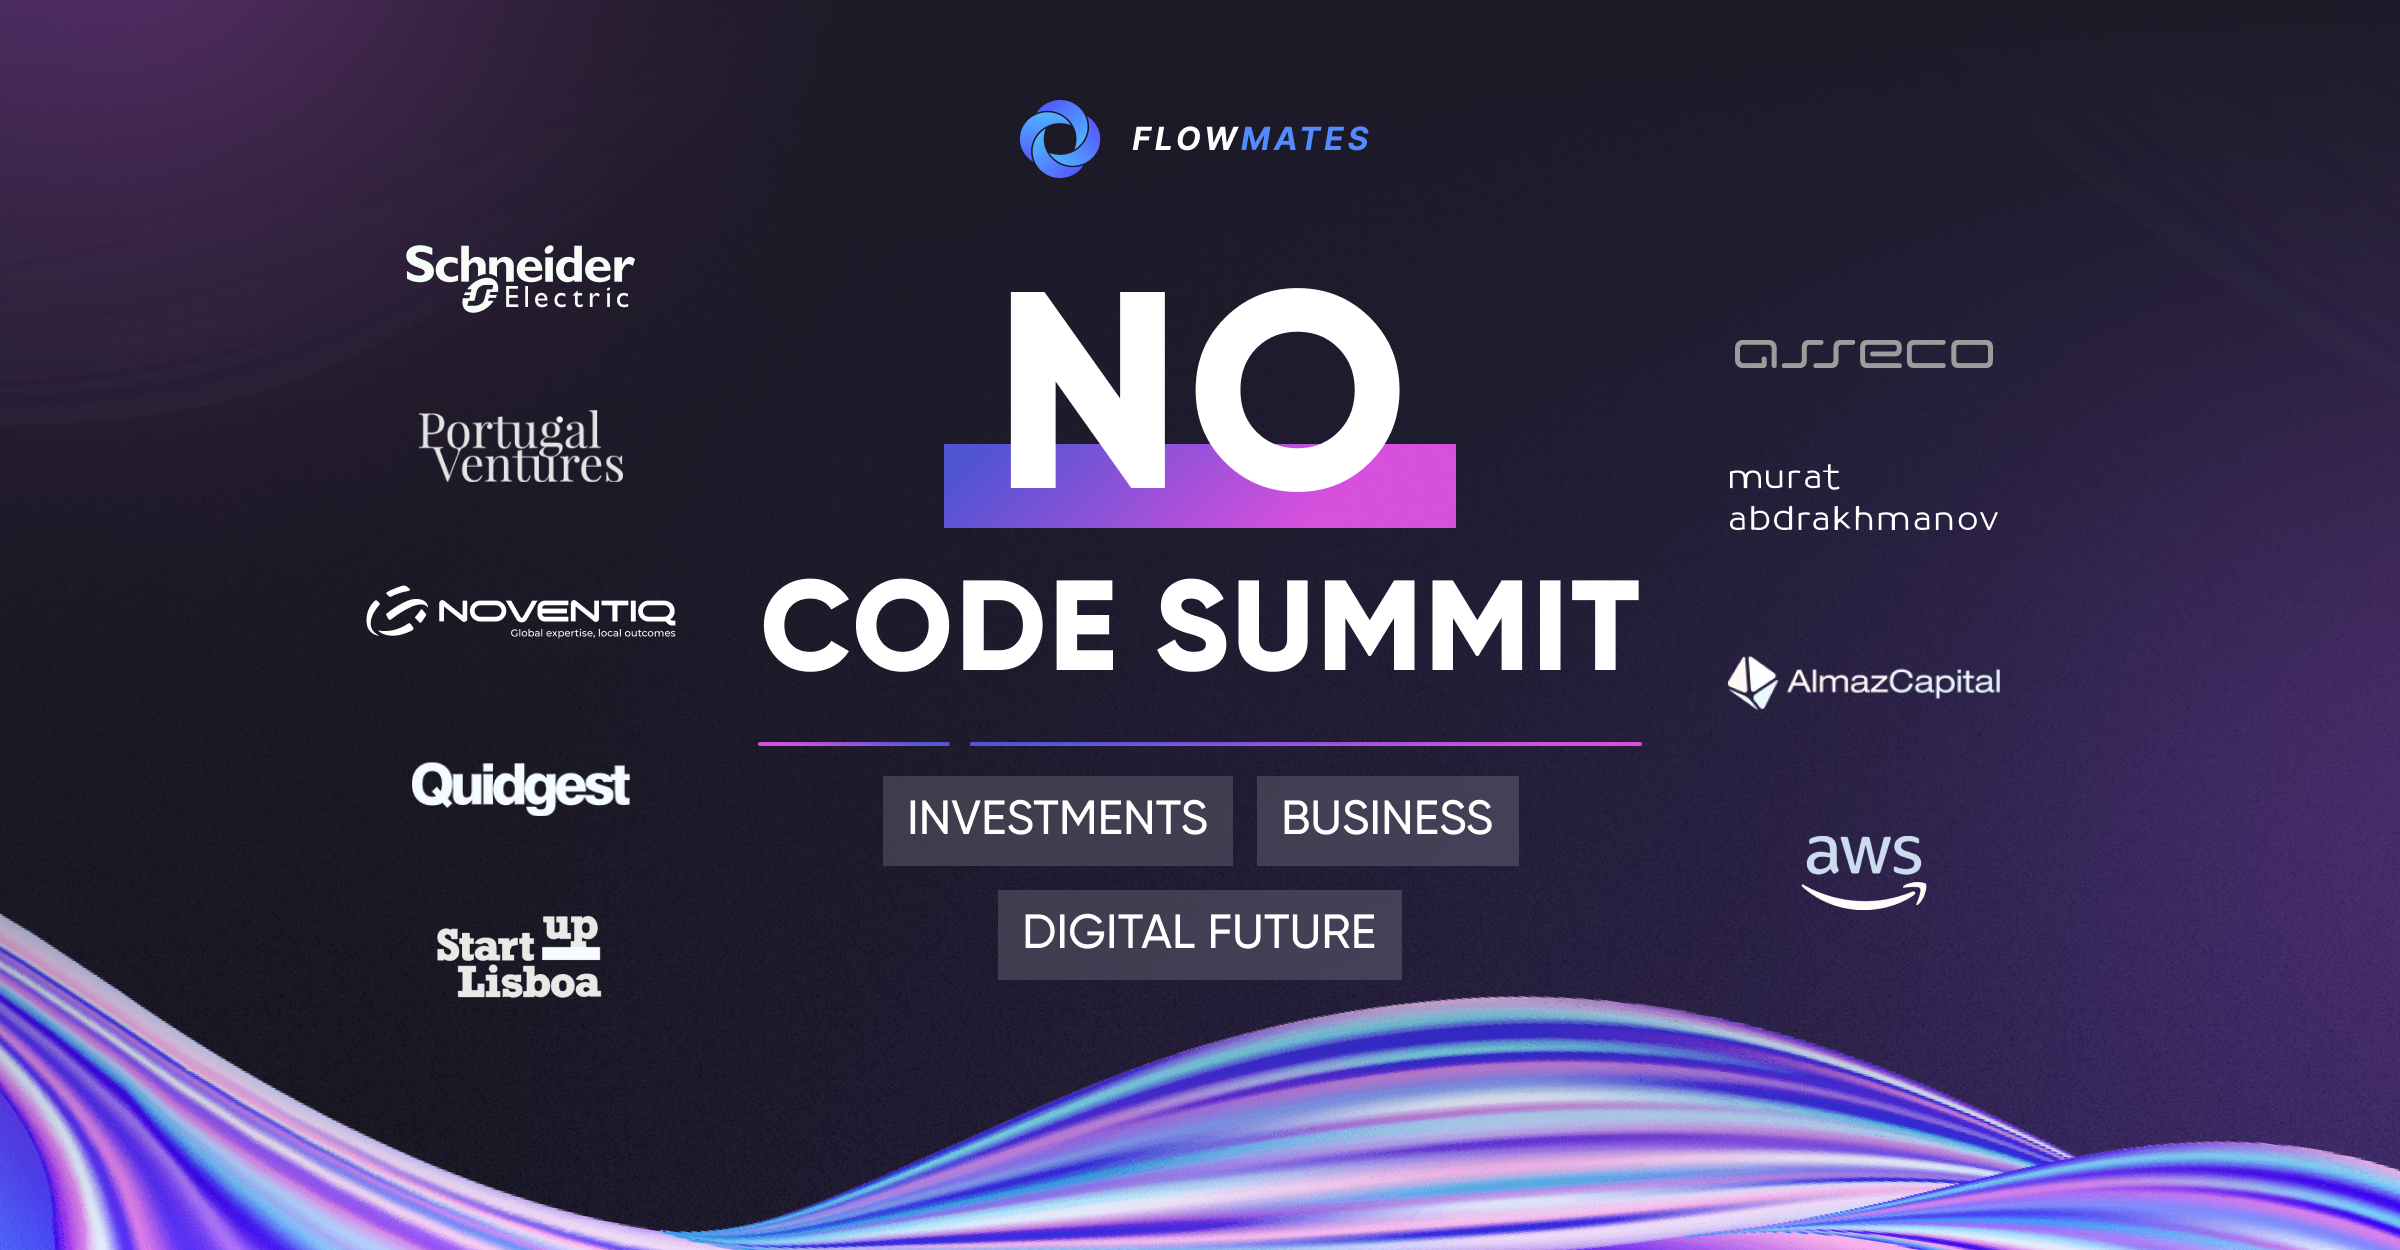 No Code Summit